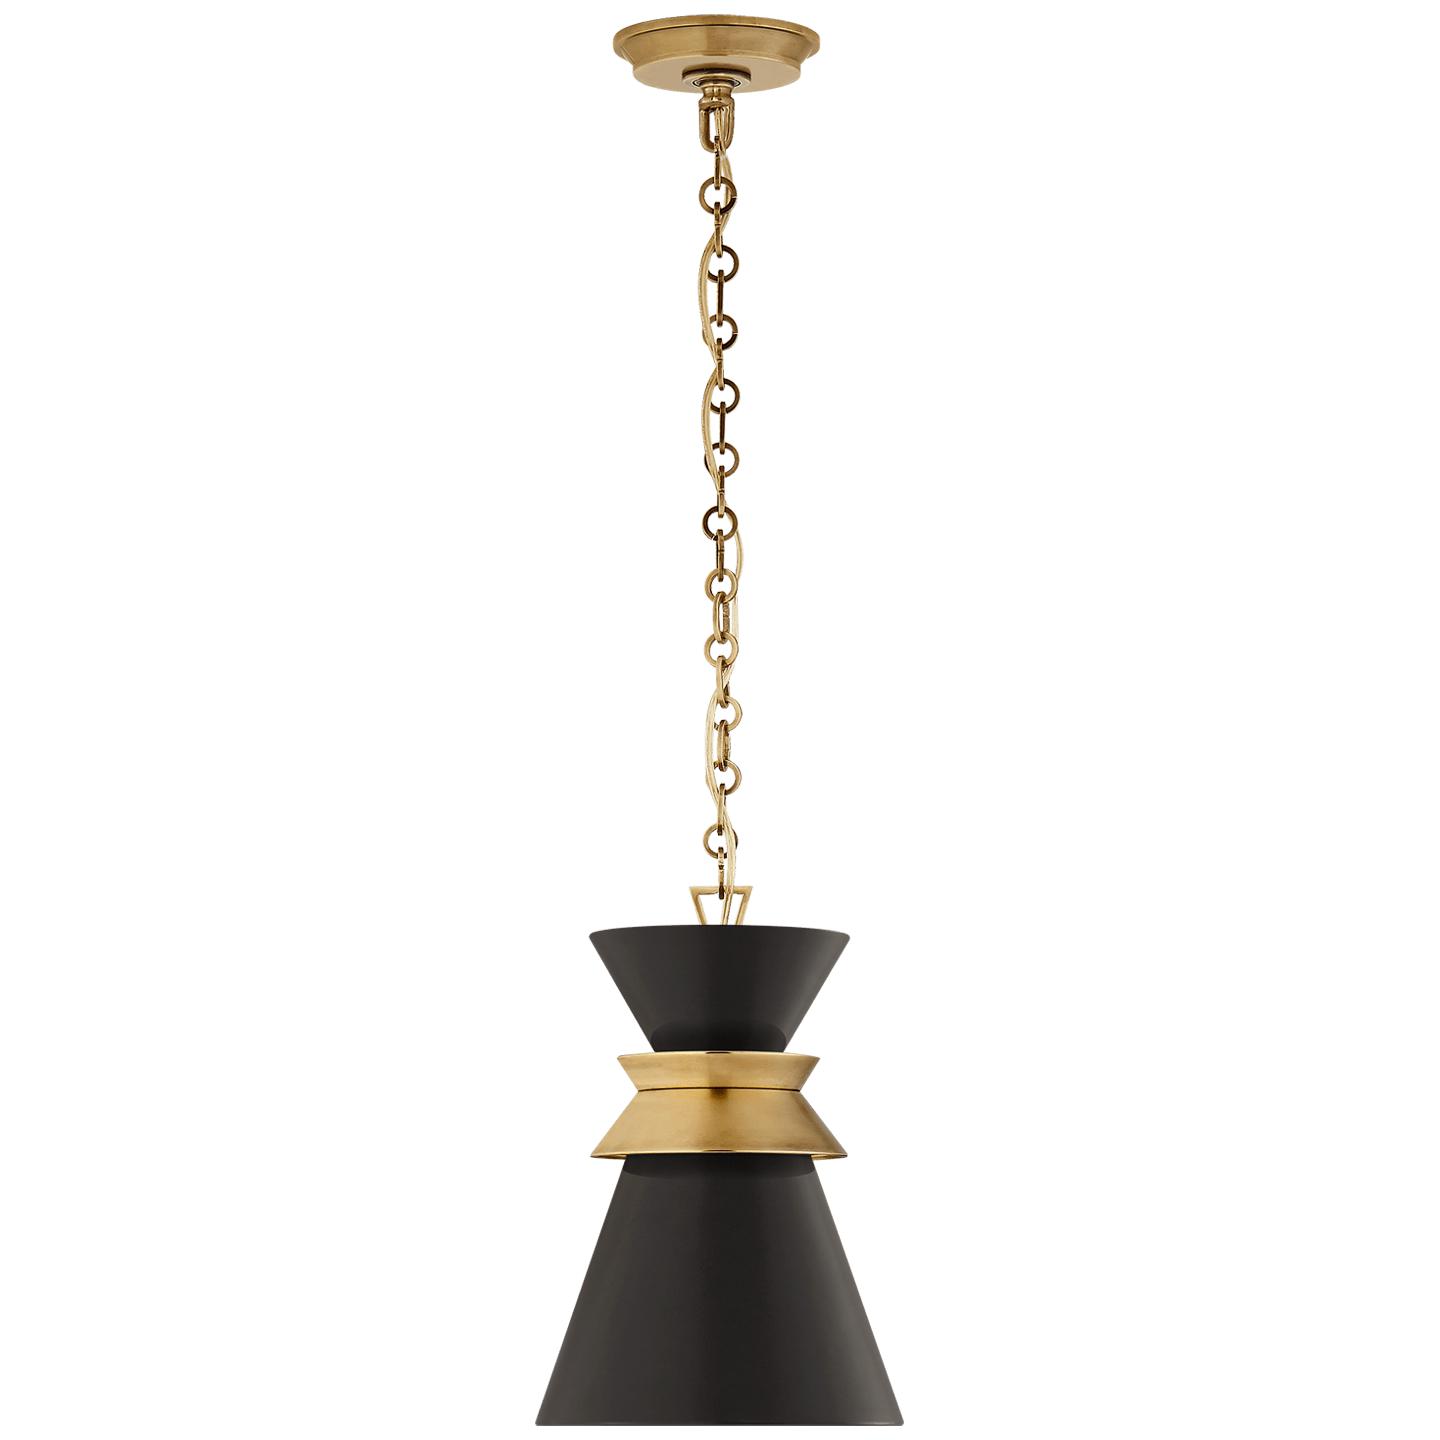 Купить Подвесной светильник Alborg Small Stacked Pendant в интернет-магазине roooms.ru